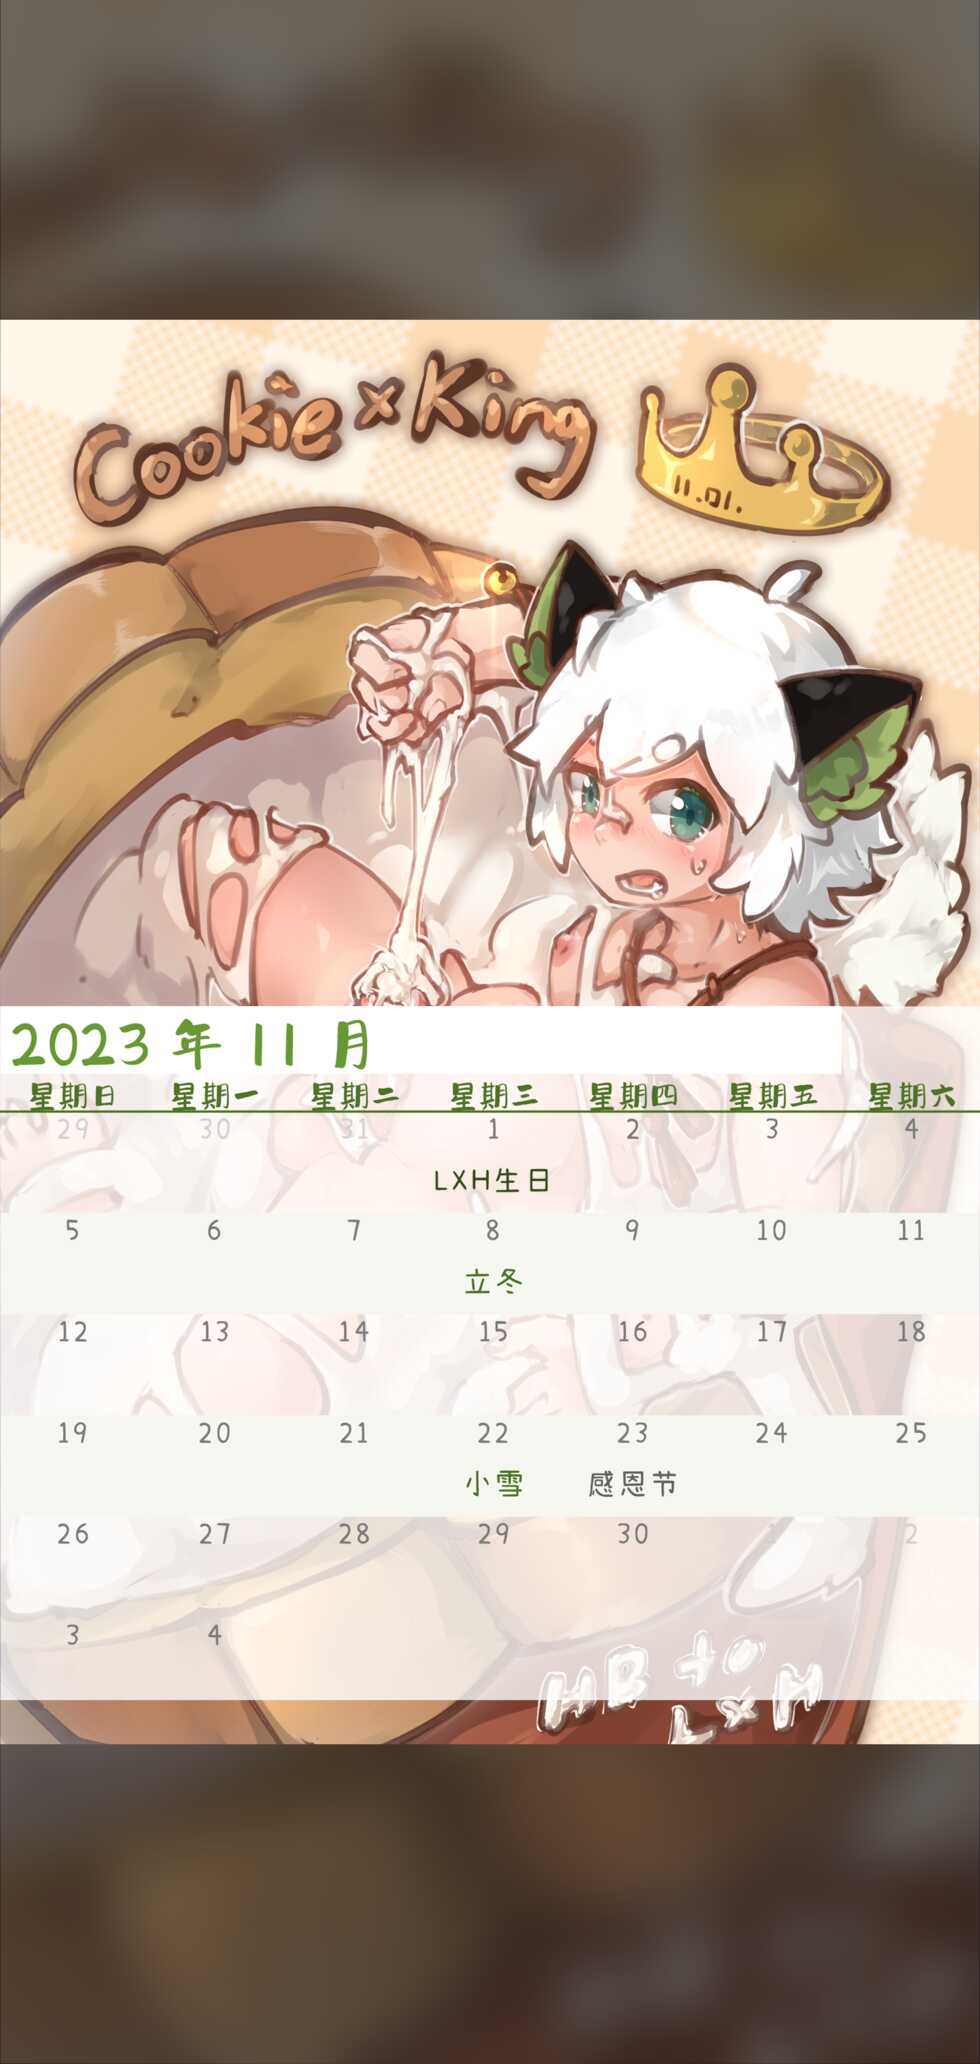 [Suka Genmei] Luo Xiaohei Calendar - Page 15